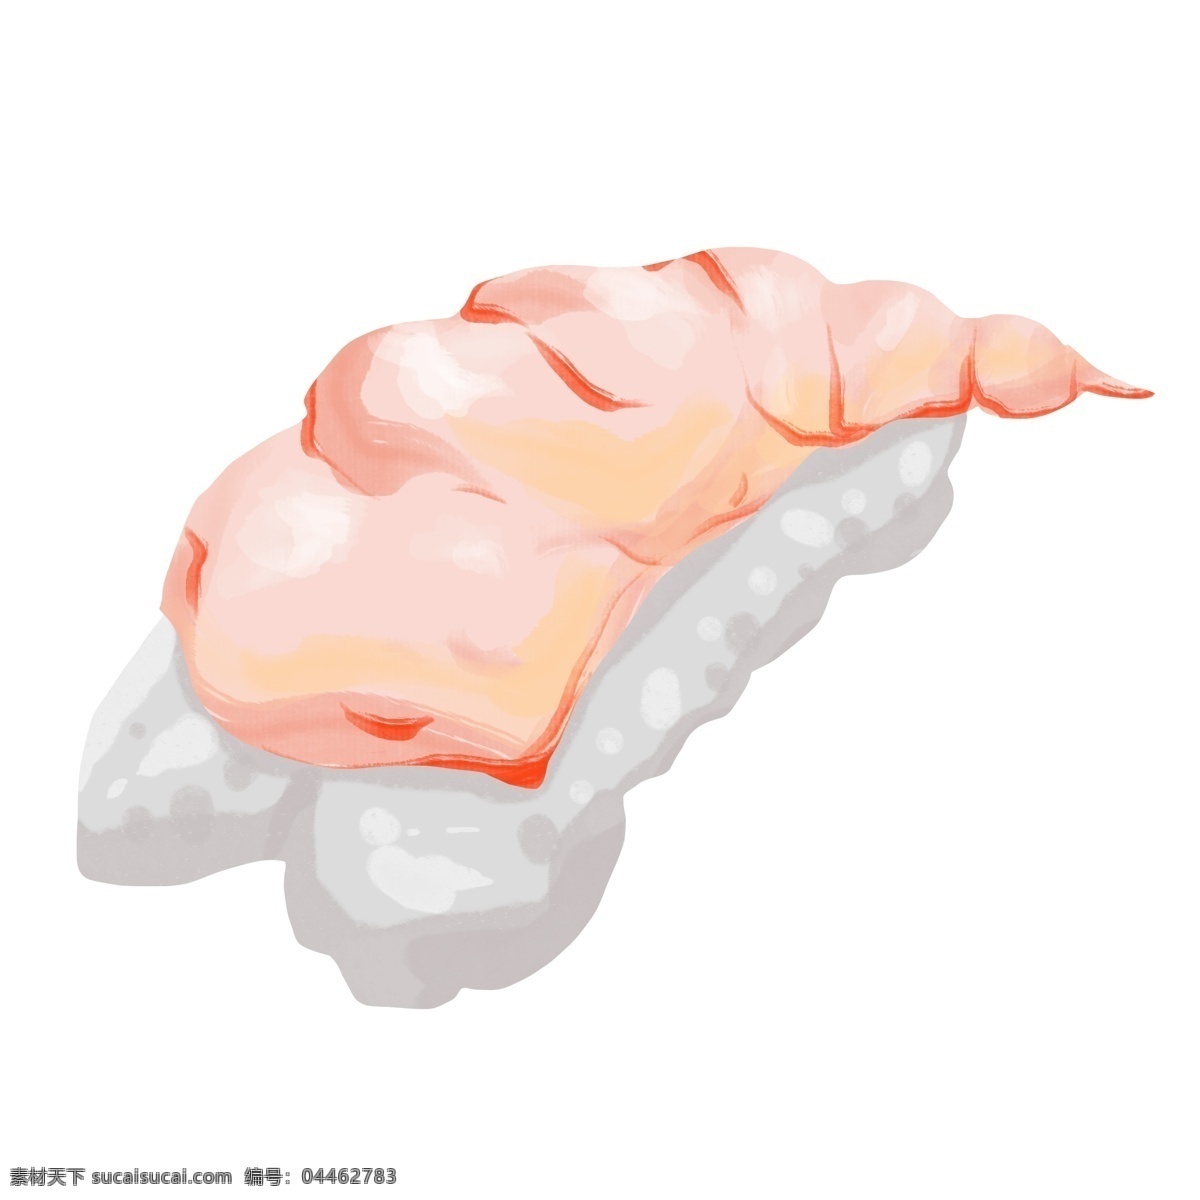 美味 金枪鱼 寿司 美食插画 金枪鱼寿司 日式食物 食物 卡通寿司插画 创意寿司插画